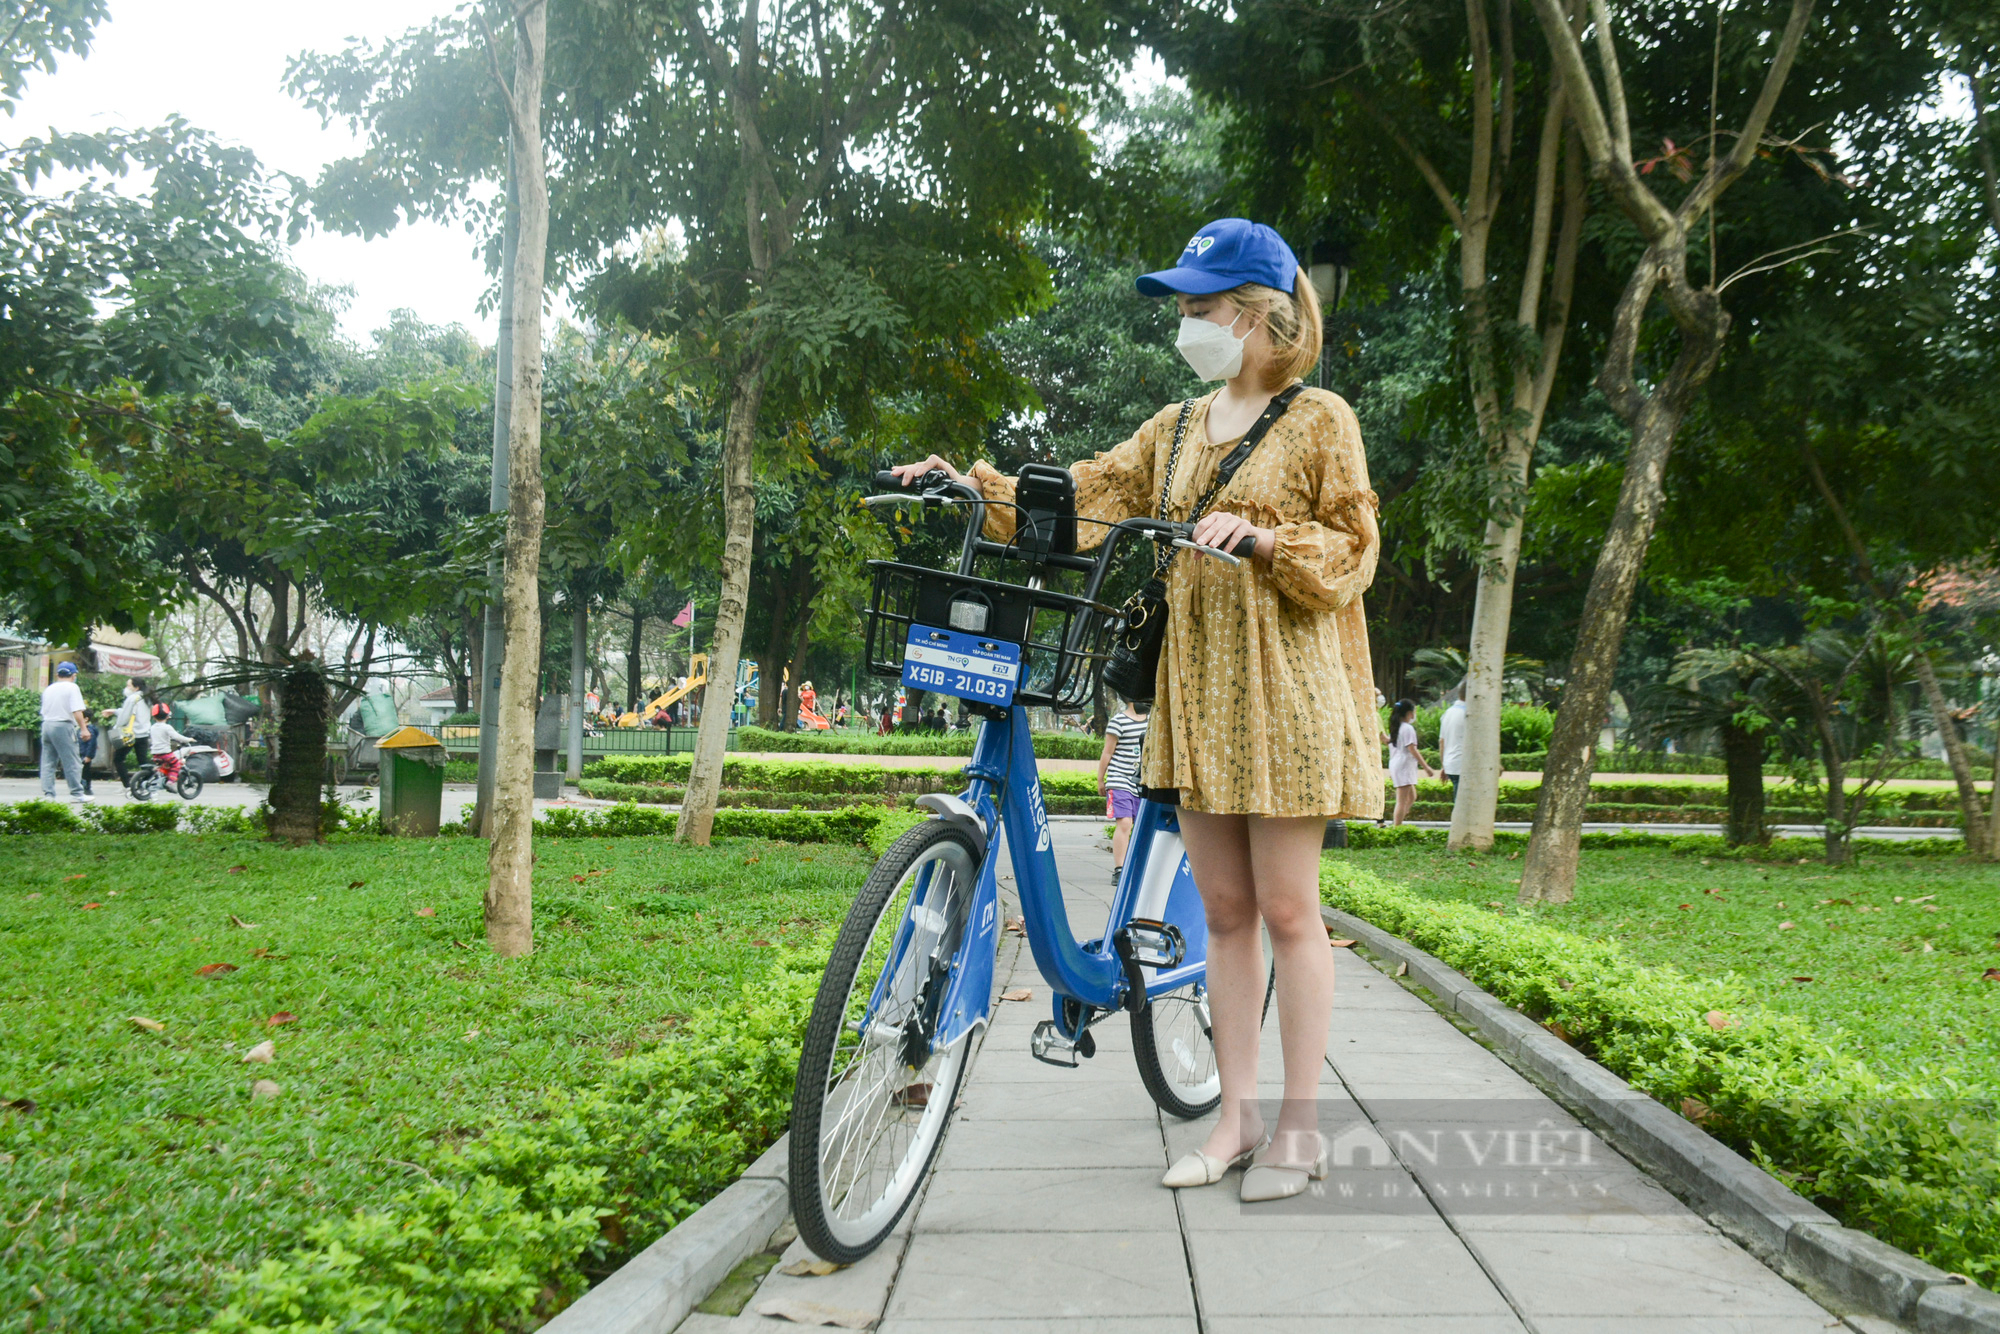 Cận cảnh xe đạp công cộng ngập tính năng hiện đại sắp được cho thuê tại Hà Nội - Ảnh 1.